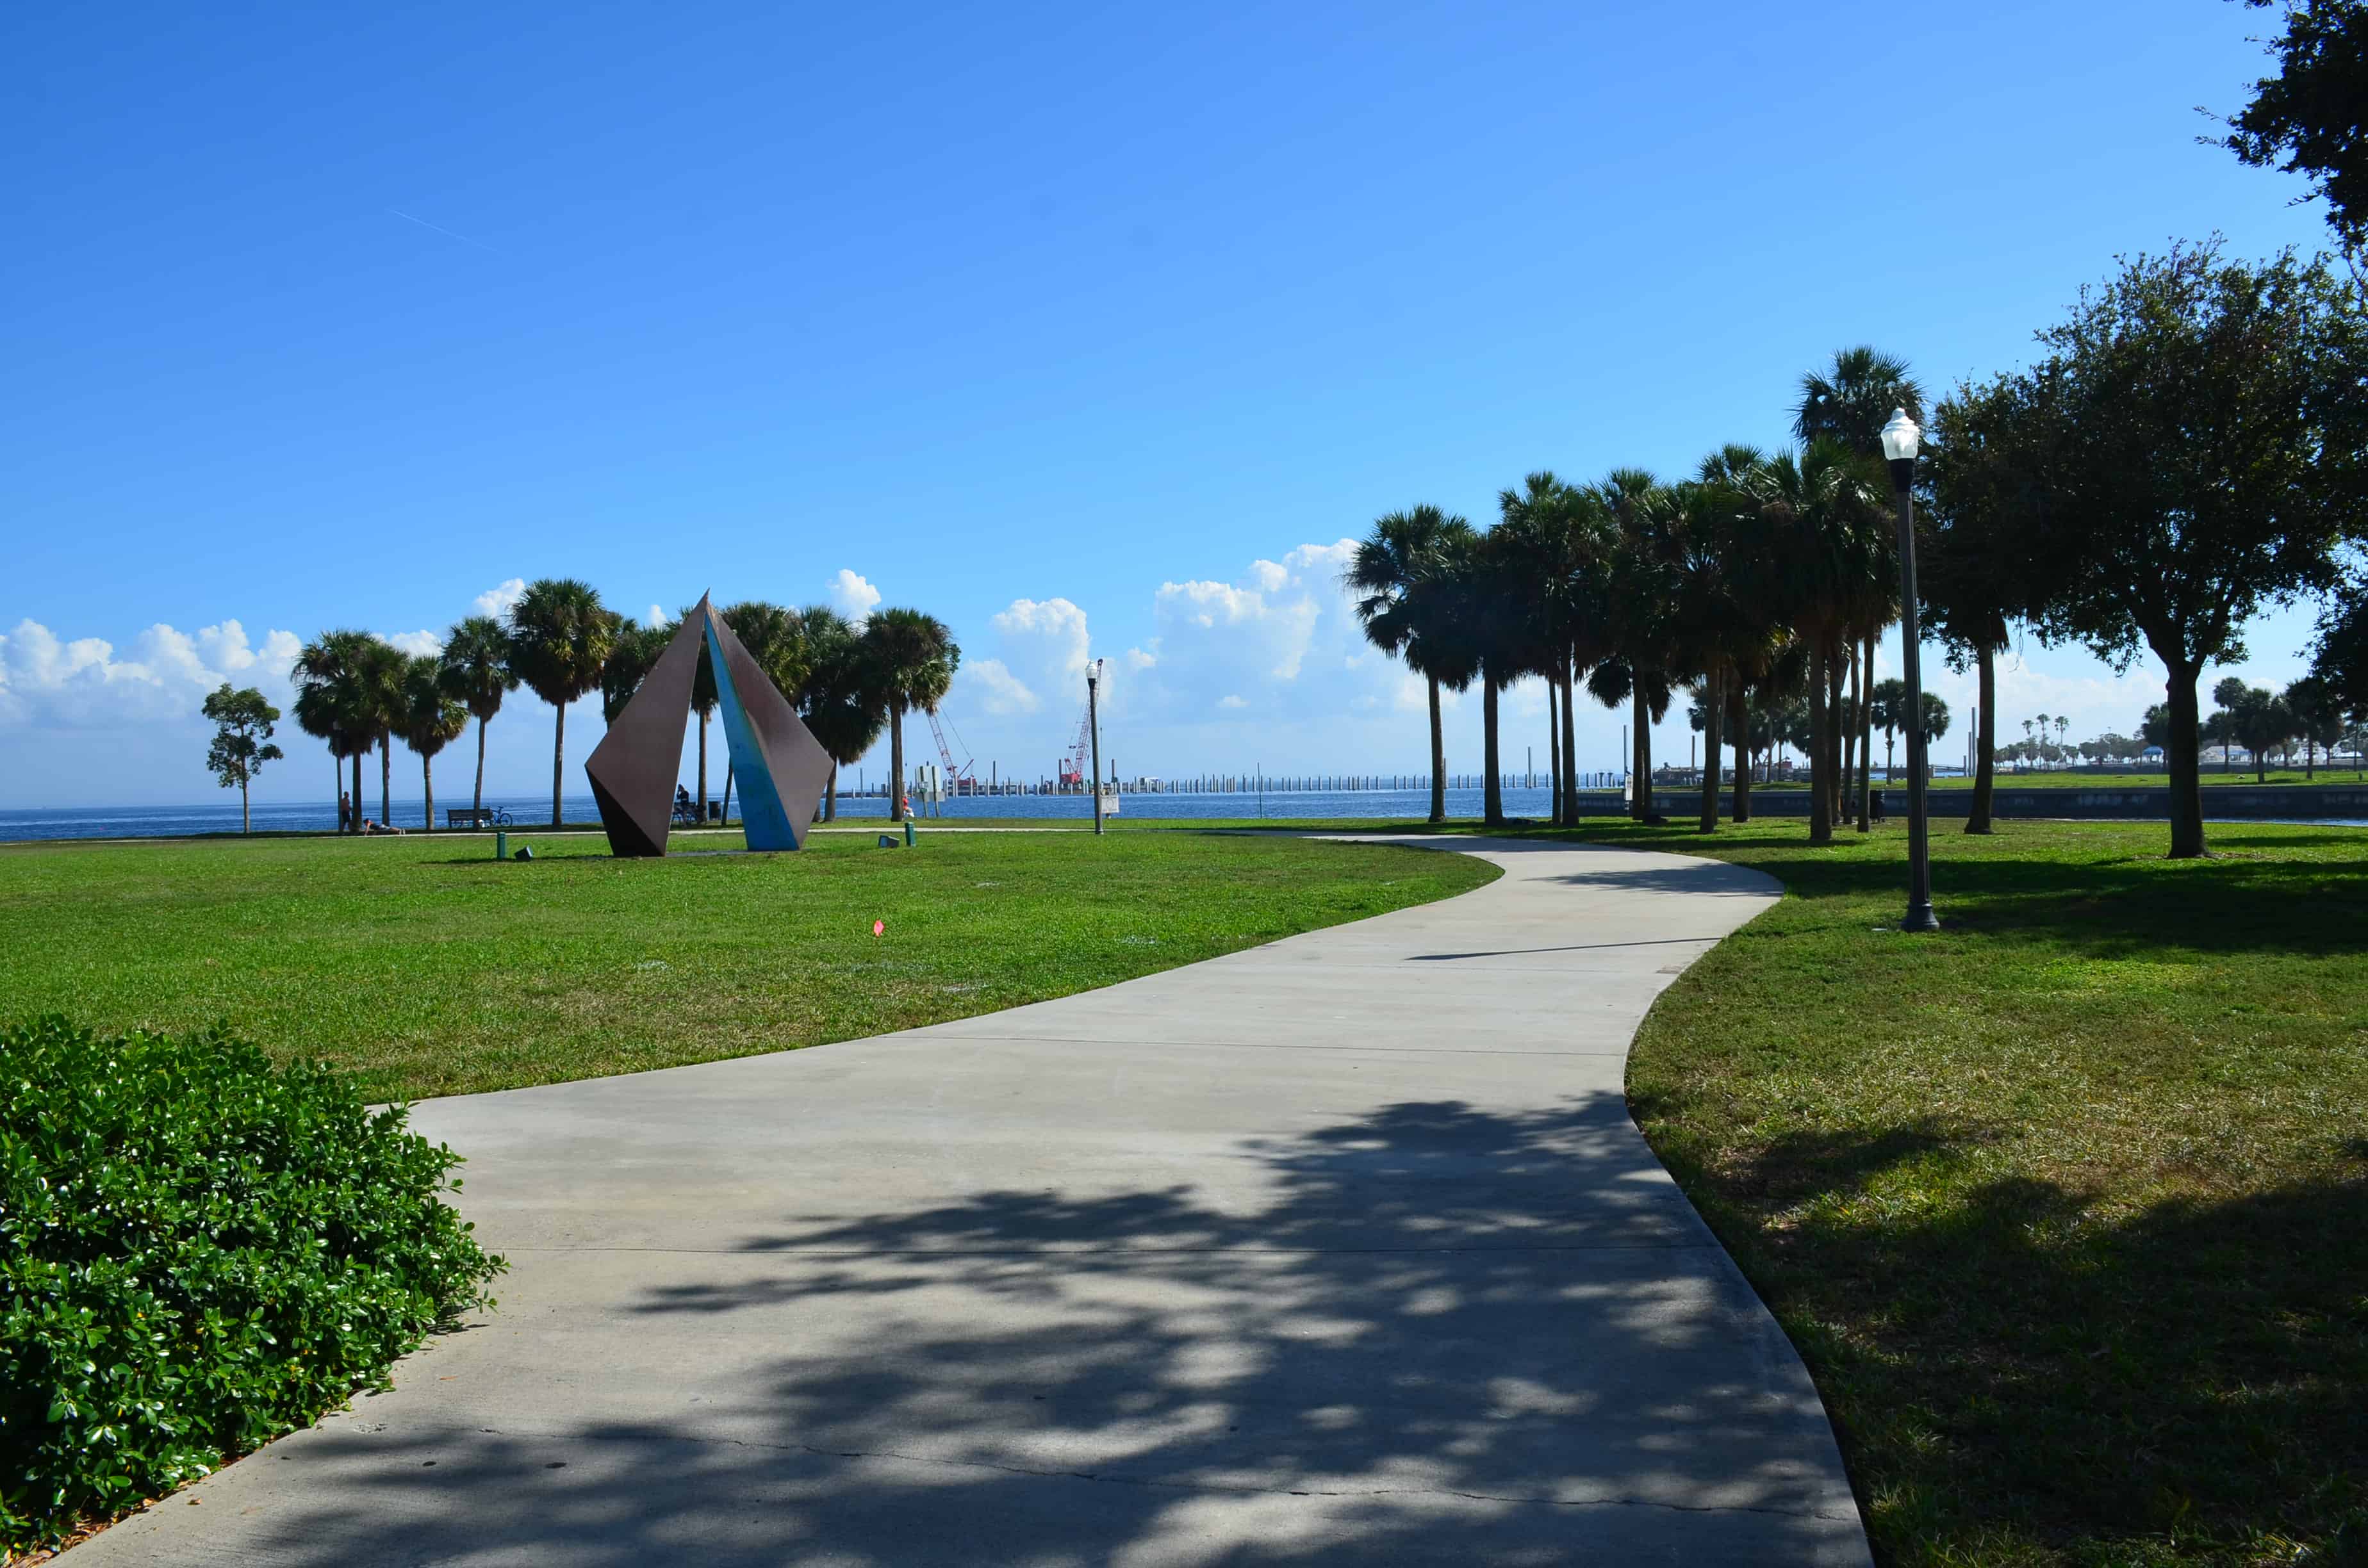 Vinoy Park in St. Petersburg, Florida